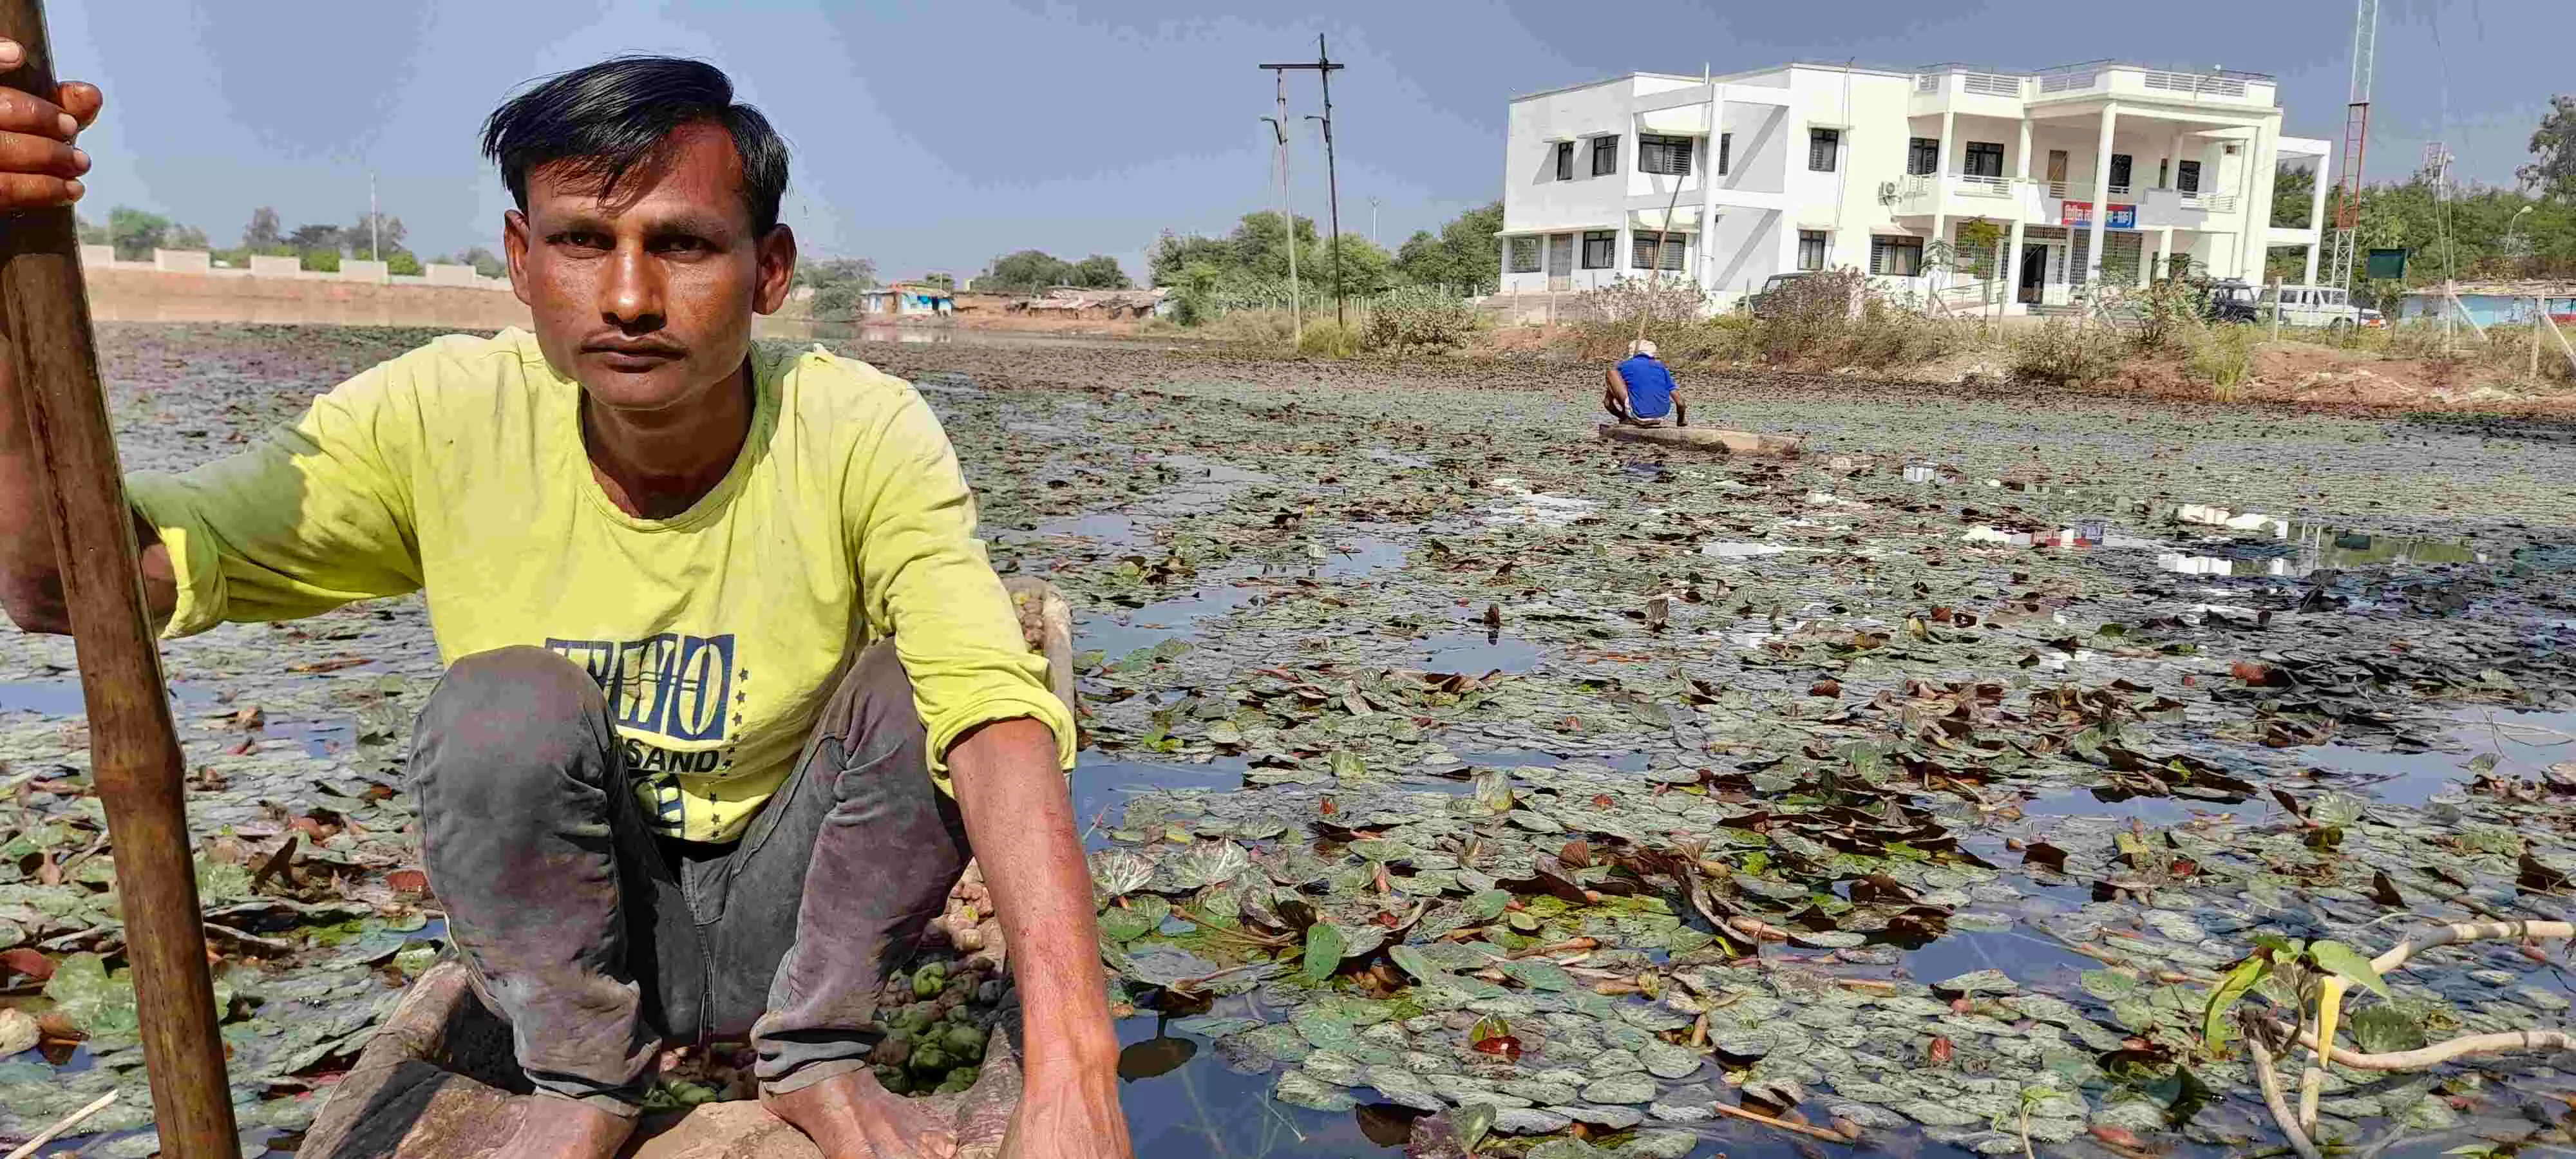 मध्य प्रदेश:  35 सालों में 8 से 80 रुपए सैकड़ा बिकने लगा सिंघाड़ा लेकिन किसानों की माली हालत जस की तस